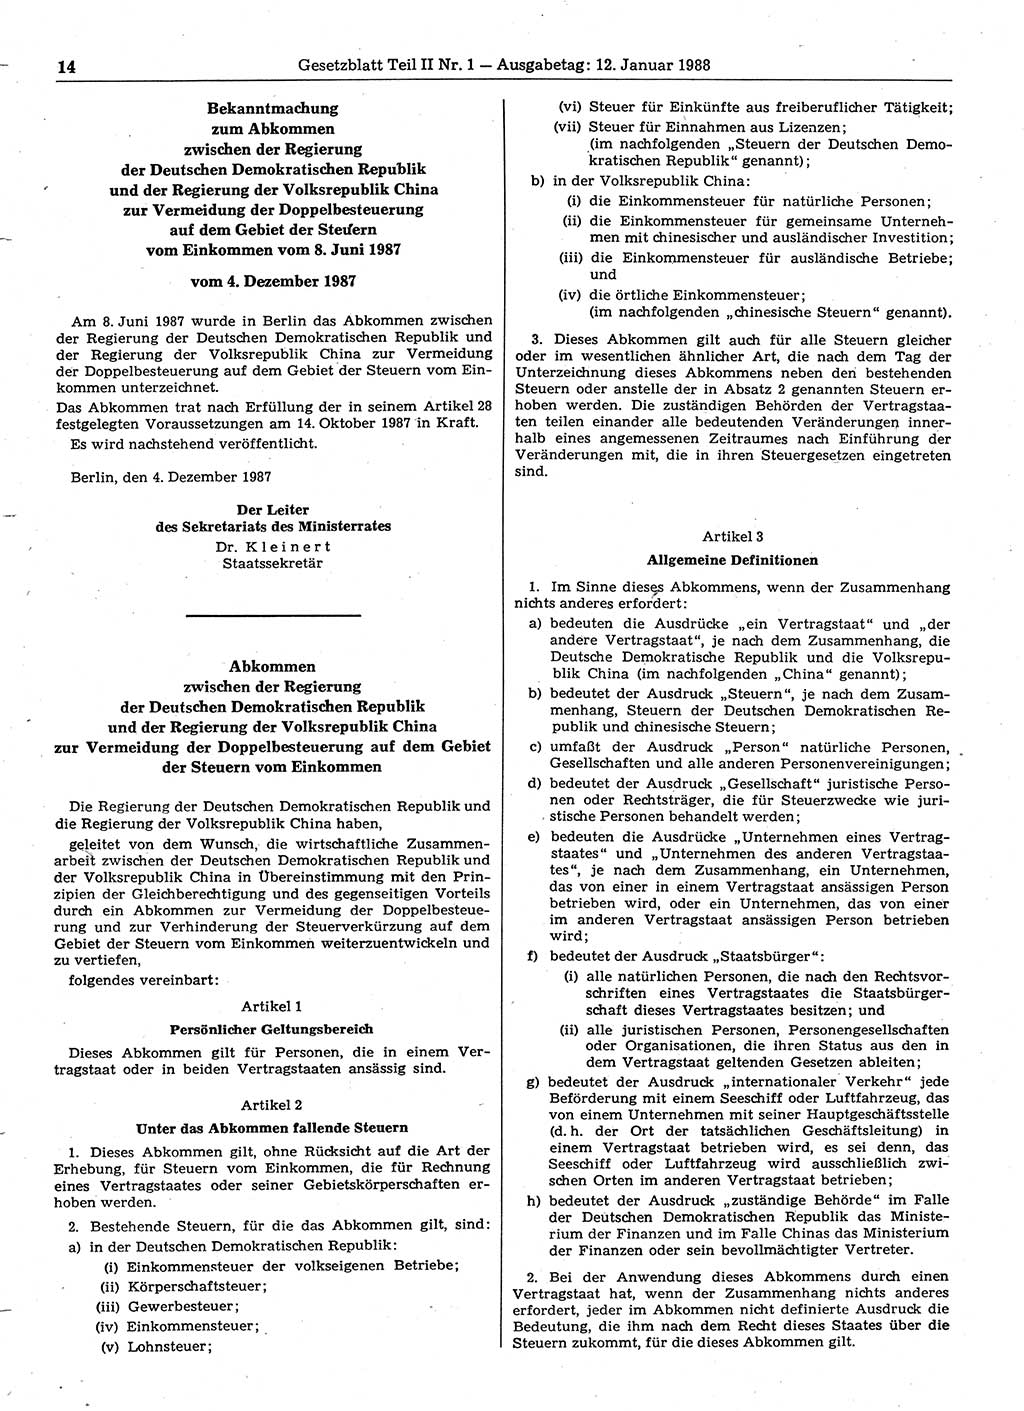 Gesetzblatt (GBl.) der Deutschen Demokratischen Republik (DDR) Teil ⅠⅠ 1988, Seite 14 (GBl. DDR ⅠⅠ 1988, S. 14)